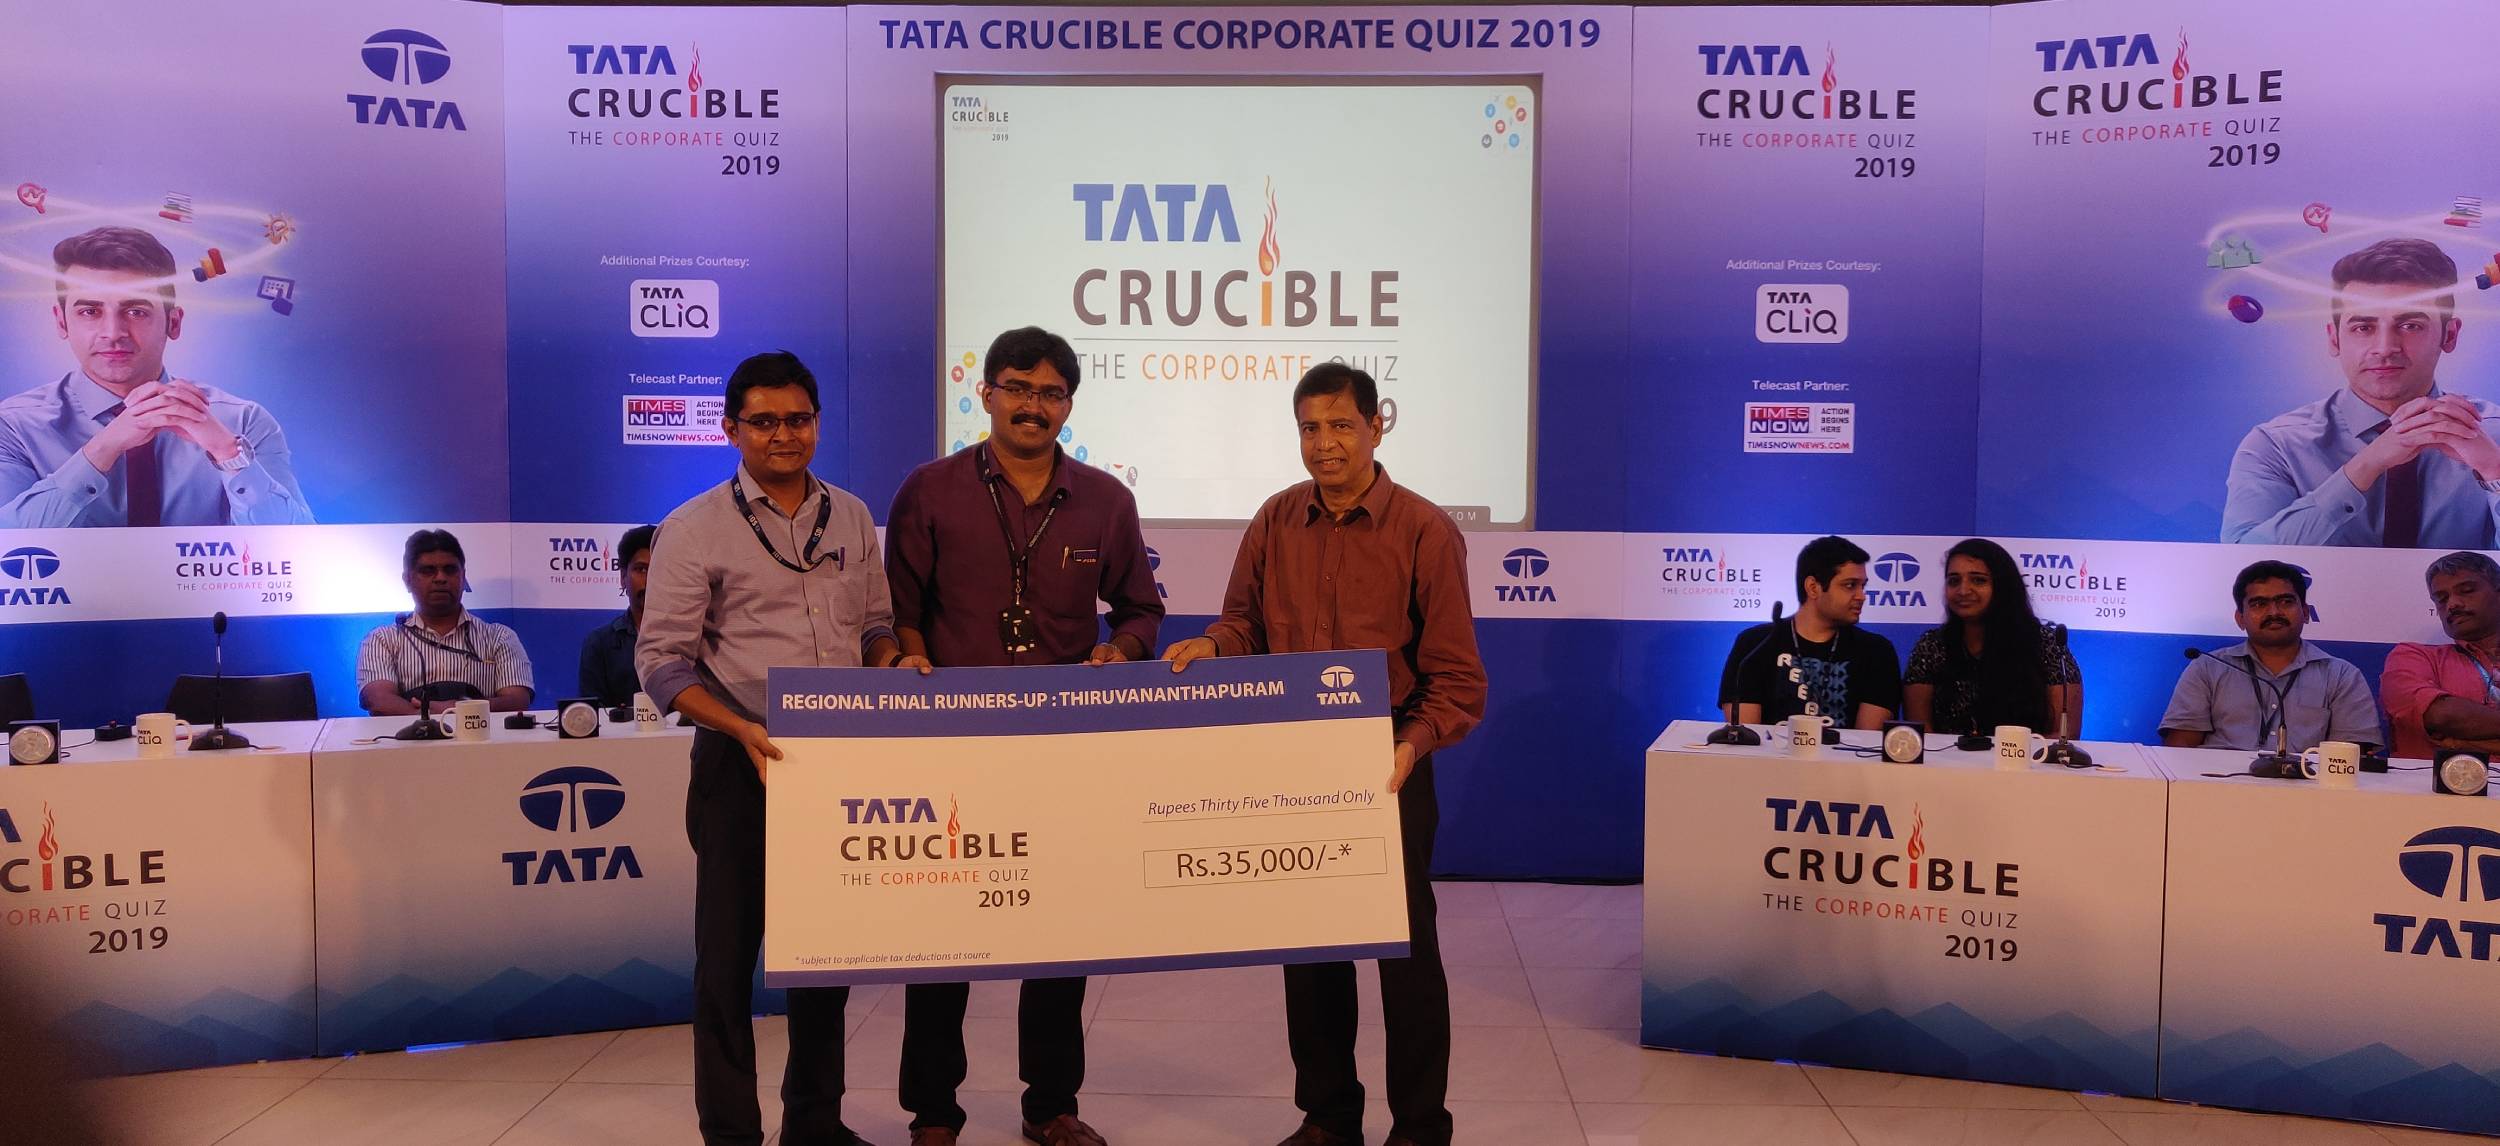 Tata Crucible Campus Quiz 2019 trivandrumcor